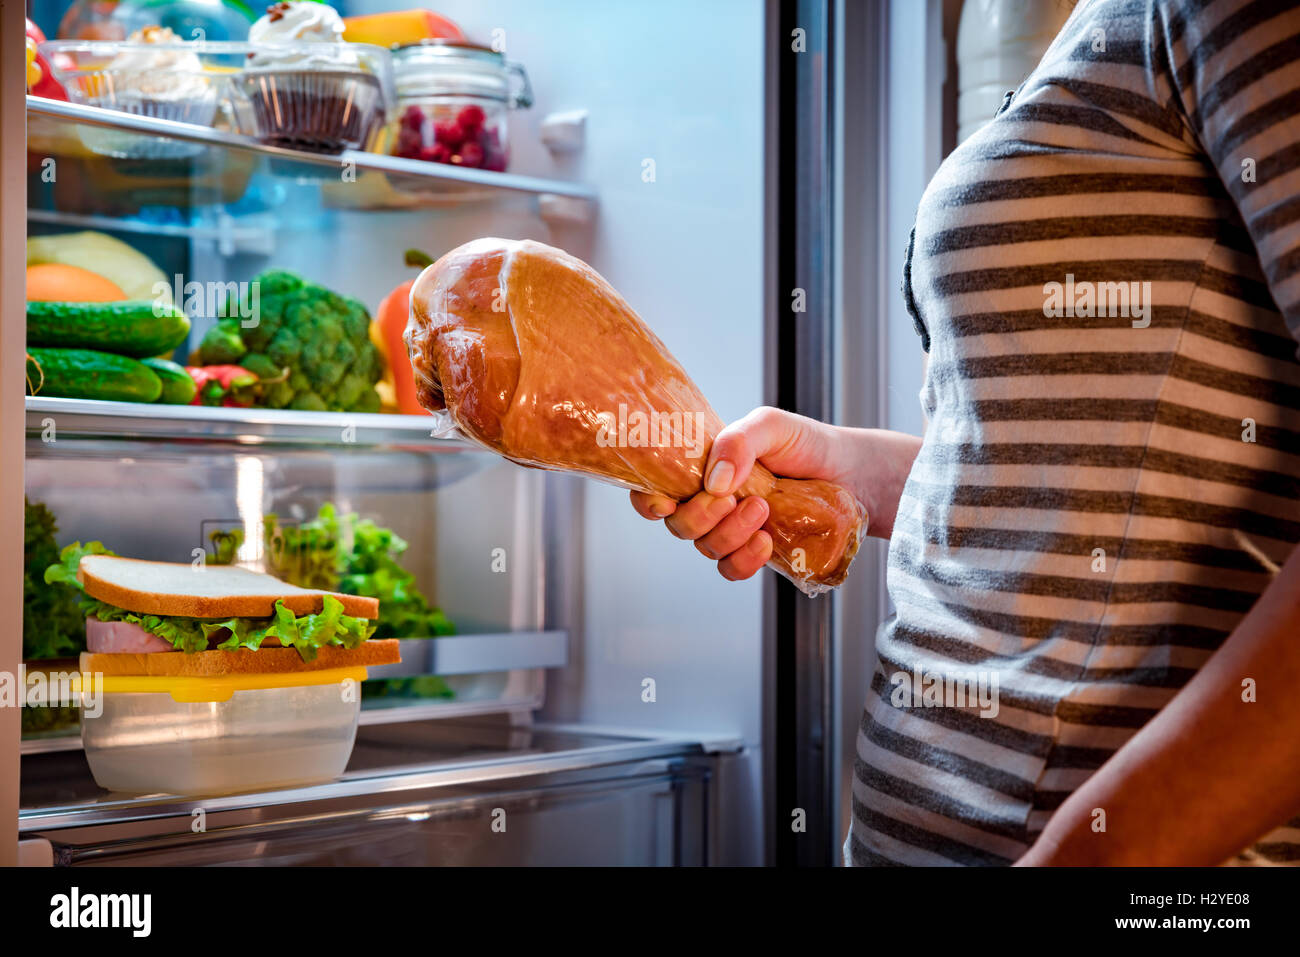 Hungrig, dicke Frau, eine große Putenschenkeln in den Händen hält und neben dem offenen Kühlschrank steht. Ungesunde Lebensmittel. Stockfoto